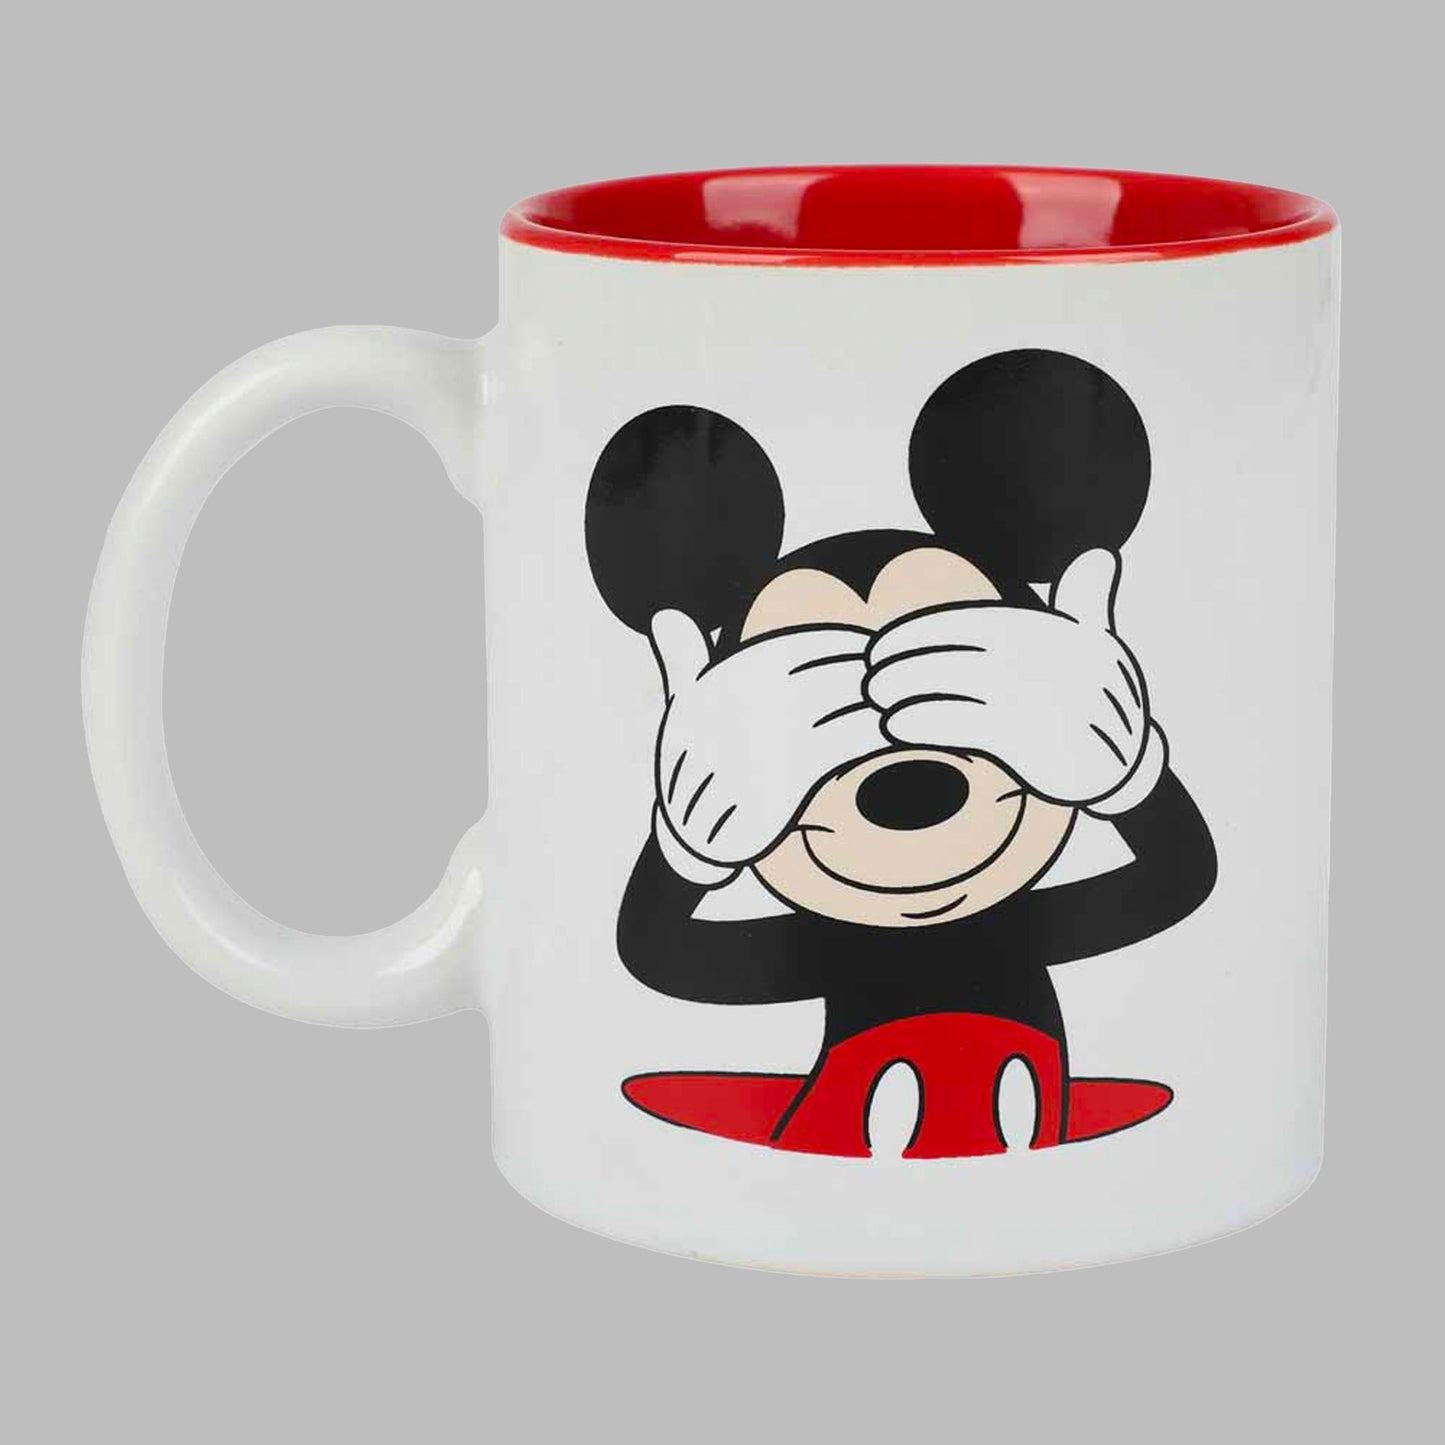 Disney Mickey Mouse Mug Warmer with 12 Ounce Mug